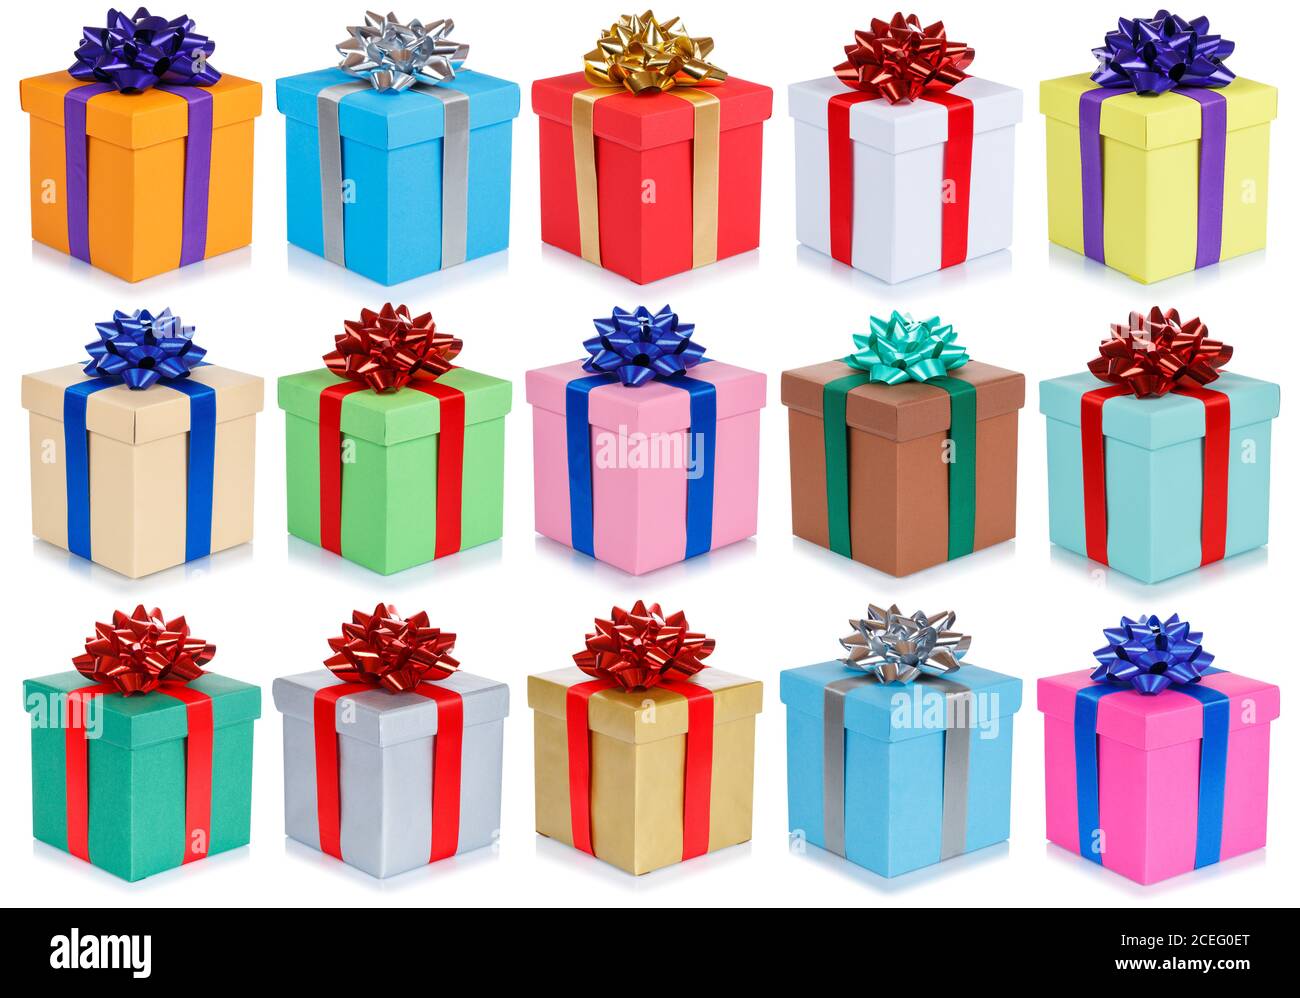 Geburtstagsgeschenke weihnachten Geschenke Kollektion Hintergrund isoliert auf einem weißen Hintergrund Stockfoto